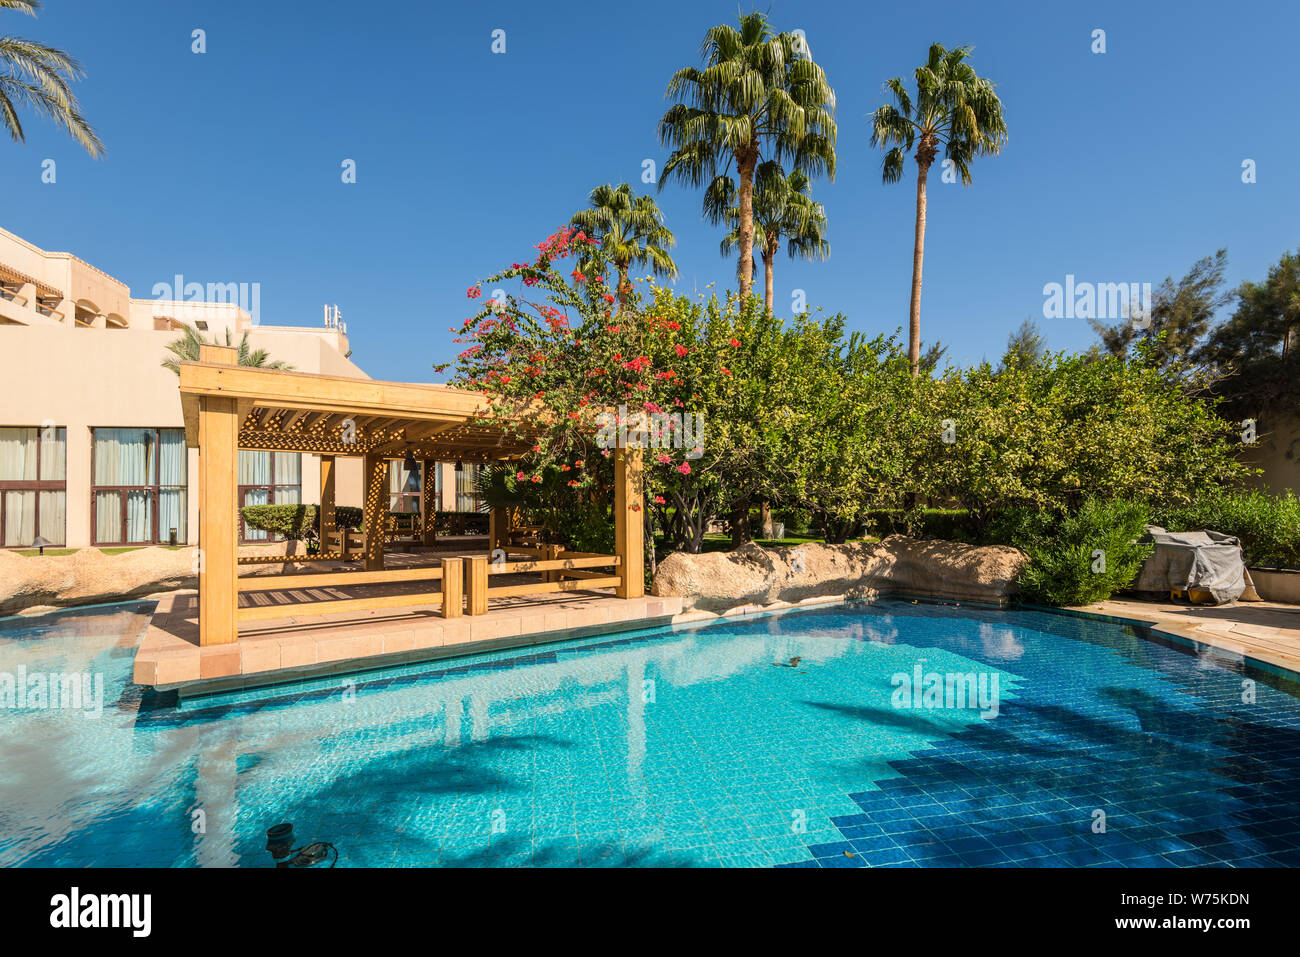 Aqaba, Jordanie - le 6 novembre 2017 : piscine près de la plage sur la mer Rouge dans le golfe d'Aqaba à l'hôtel InterContinental Aqaba en Jordanie, Jorda Banque D'Images